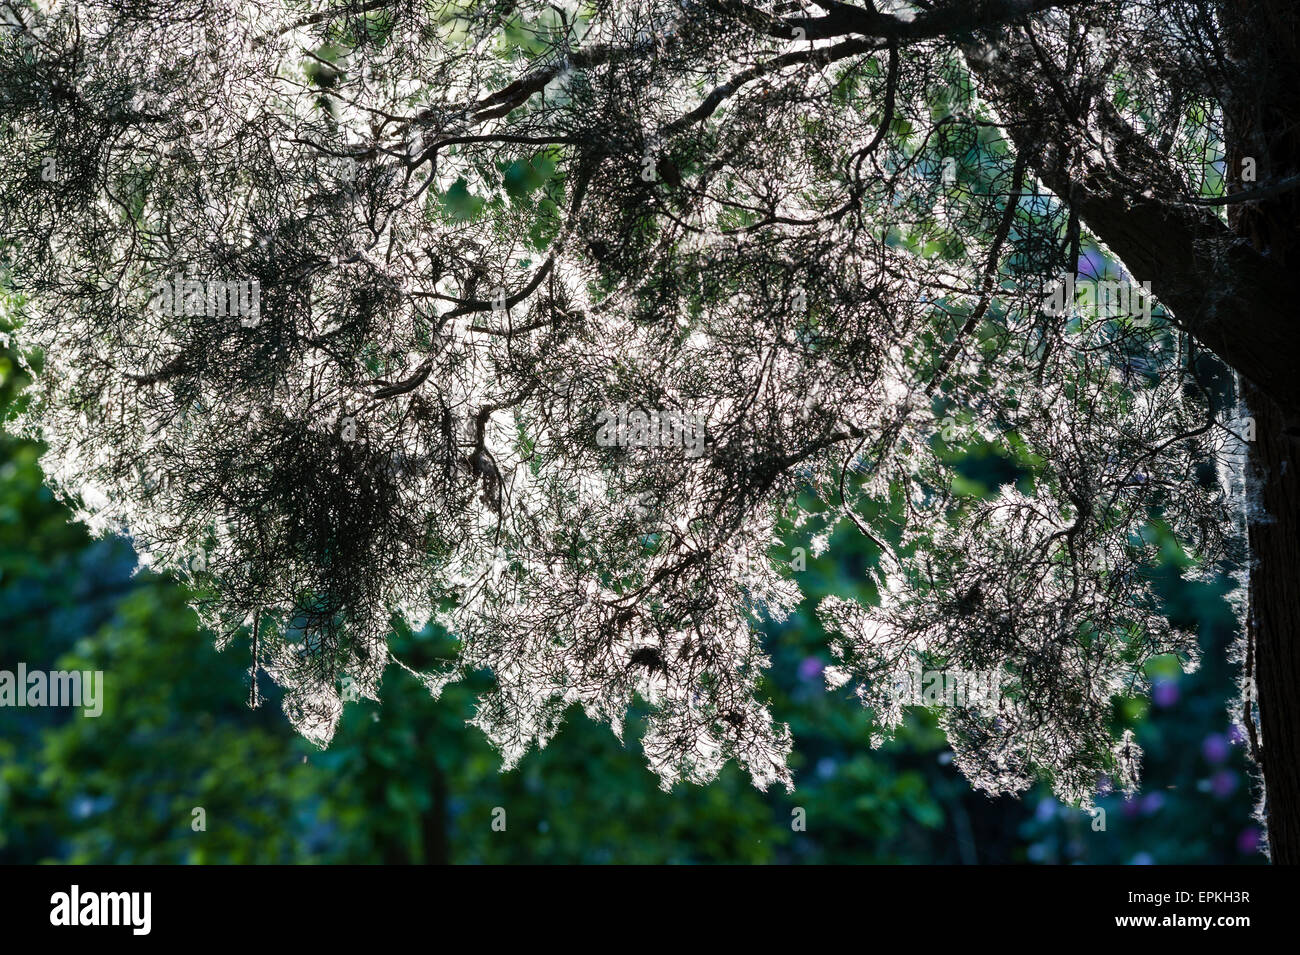 Les jardins de Ninfa, lazio, Italie. Les graines de peupliers (Populus) couvrent tout, au début de l'été Banque D'Images